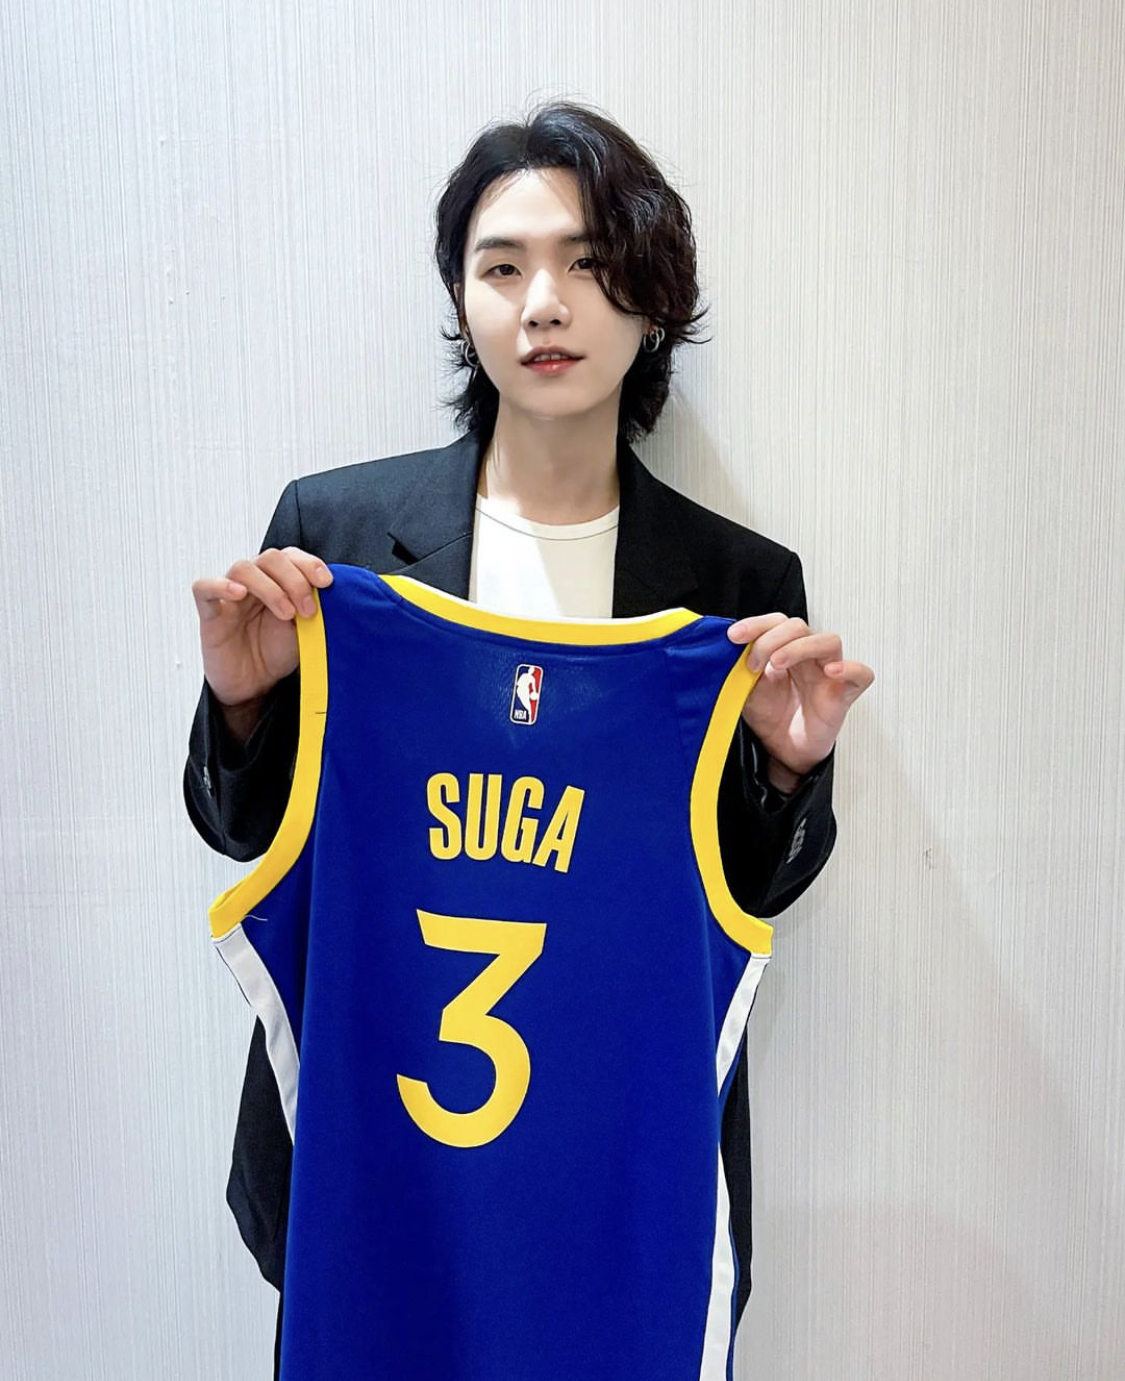 SUGA, star della band dei BTS è diventato ambasciatore dell'NBA. Il rapper sud coreano espanderà il marchio in tutto il mondo